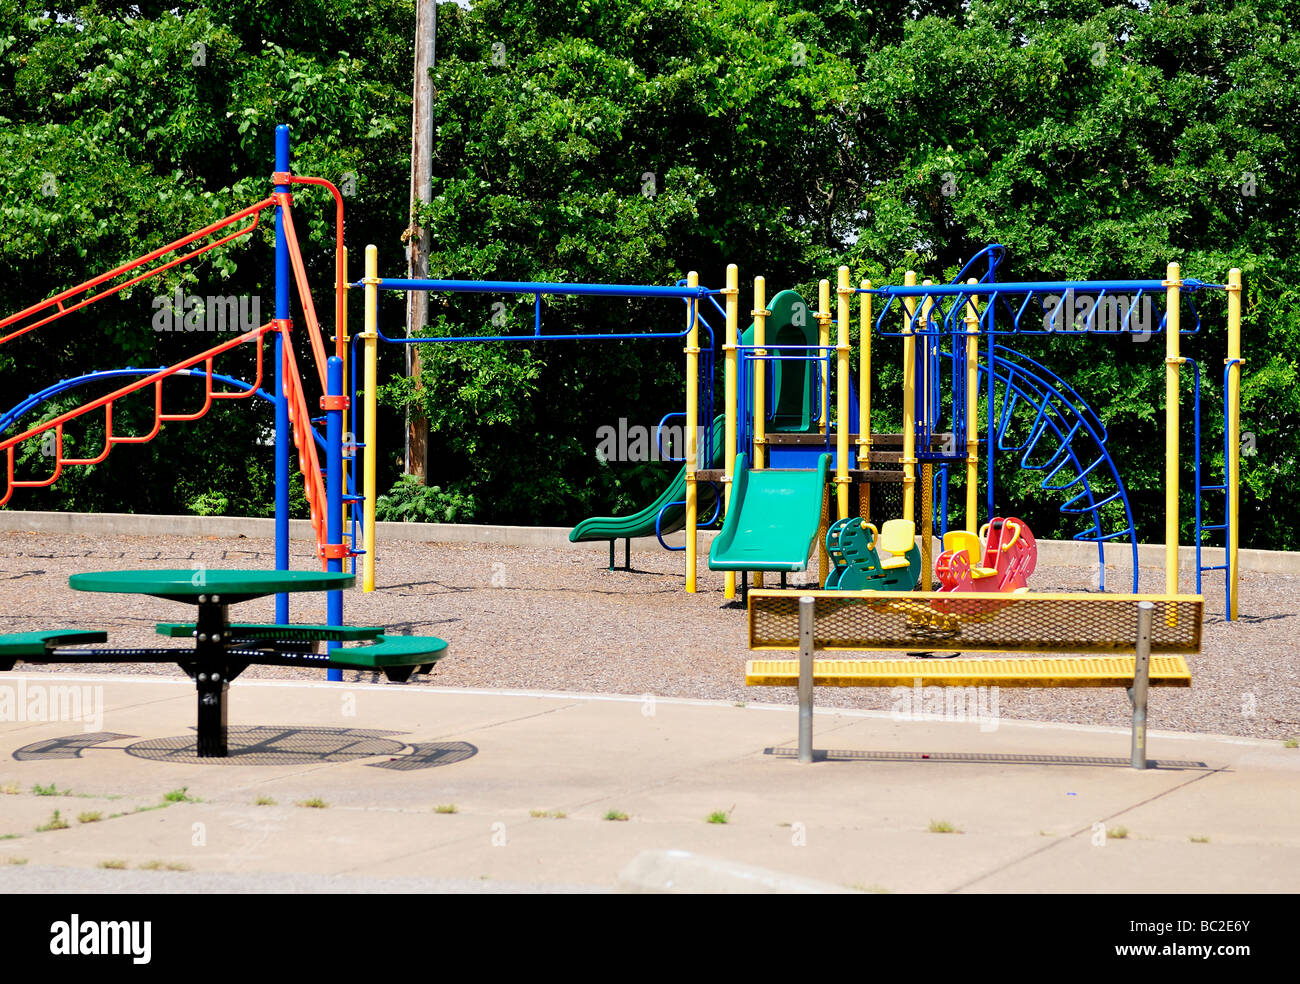 Attrezzature per parchi gioco consistente di una rotatoria e diapositive,vicino a un lago in Oklahoma City, Oklahoma, Stati Uniti d'America. Foto Stock